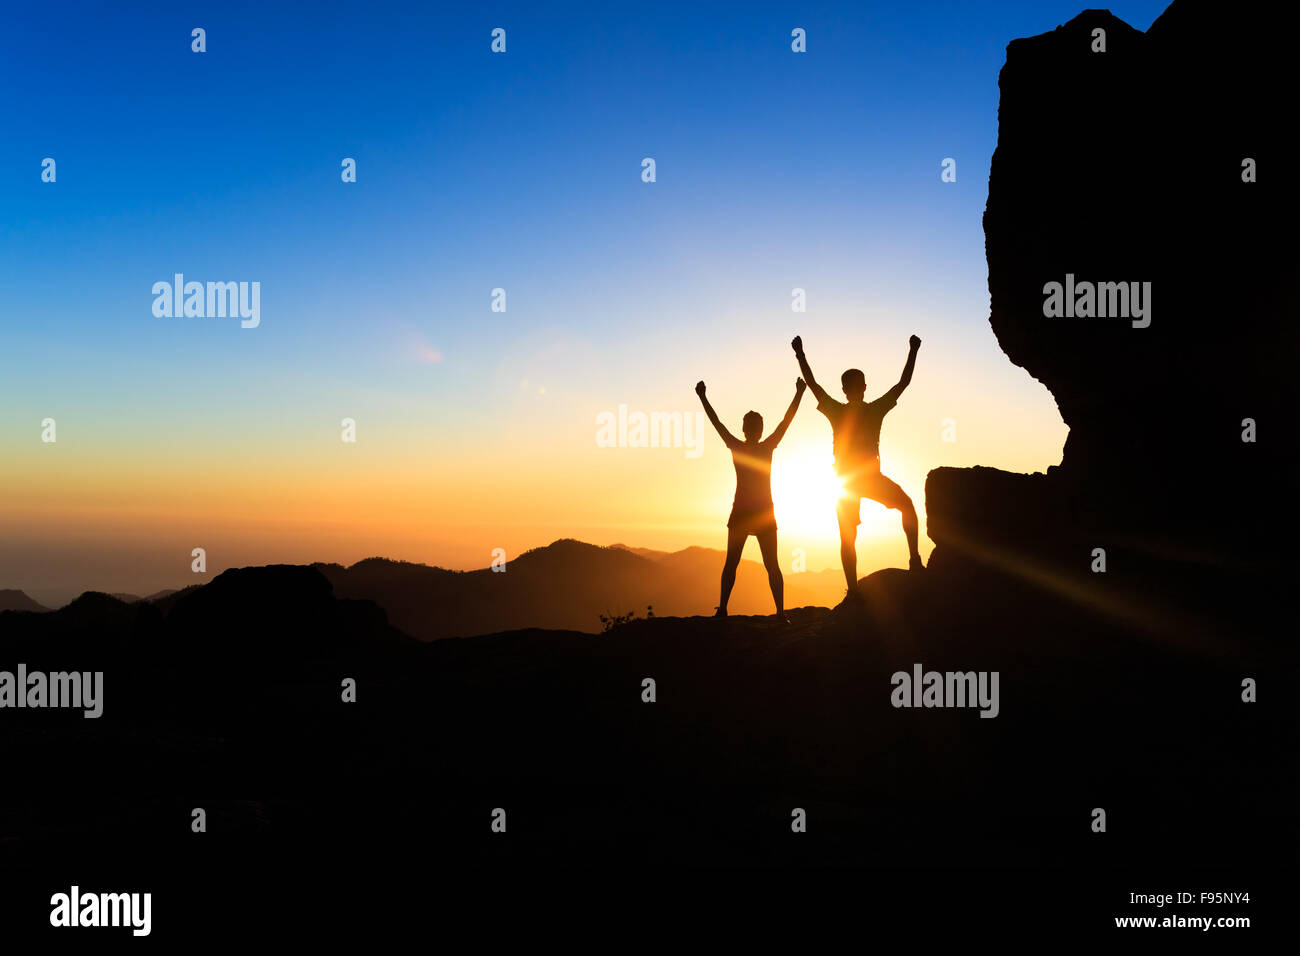 Teamarbeit paar Wanderer Erfolg im Sonnenuntergang Gebirge, erreichen mit ausgestreckten Armen. Junger Mann und Frau auf felsigen Berg Stockfoto